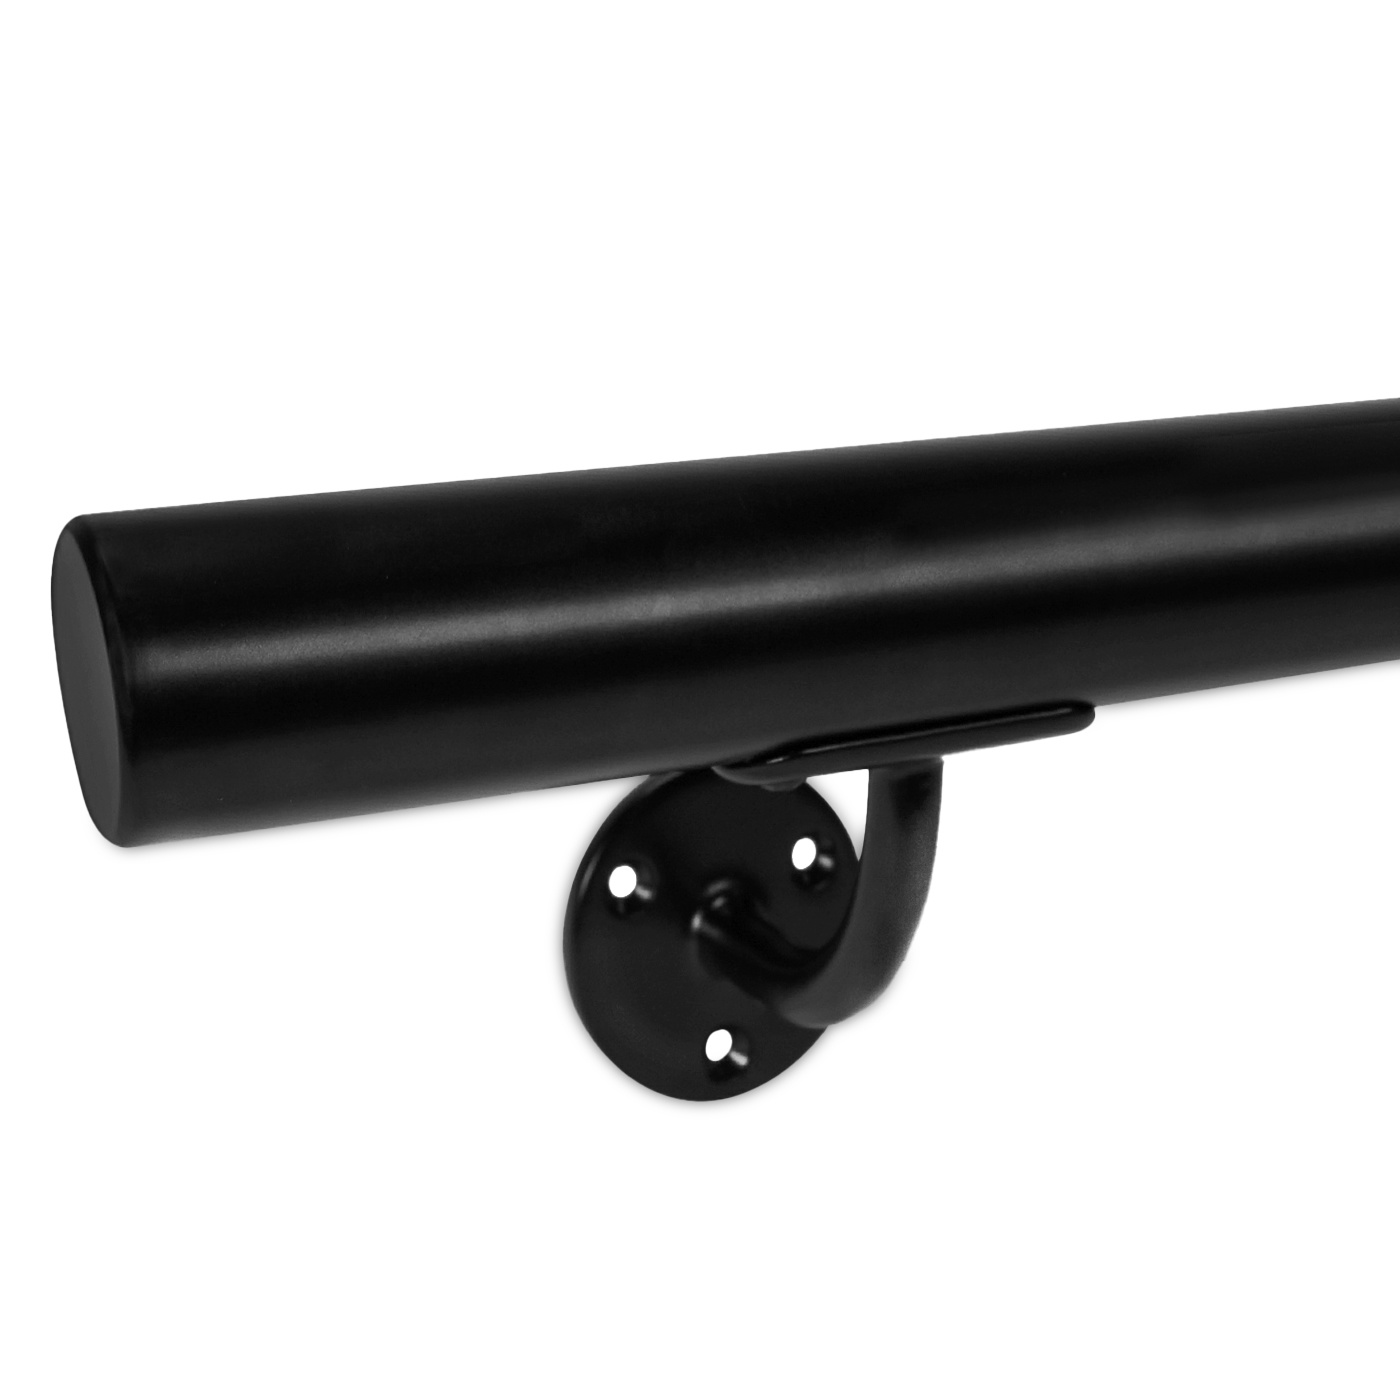  Handlauf schwarz beschichtet rund Modell 2 - Runde Treppengeländer - Treppenhandlauf mit schwarzer Pulverbeschichtung RAL 9005